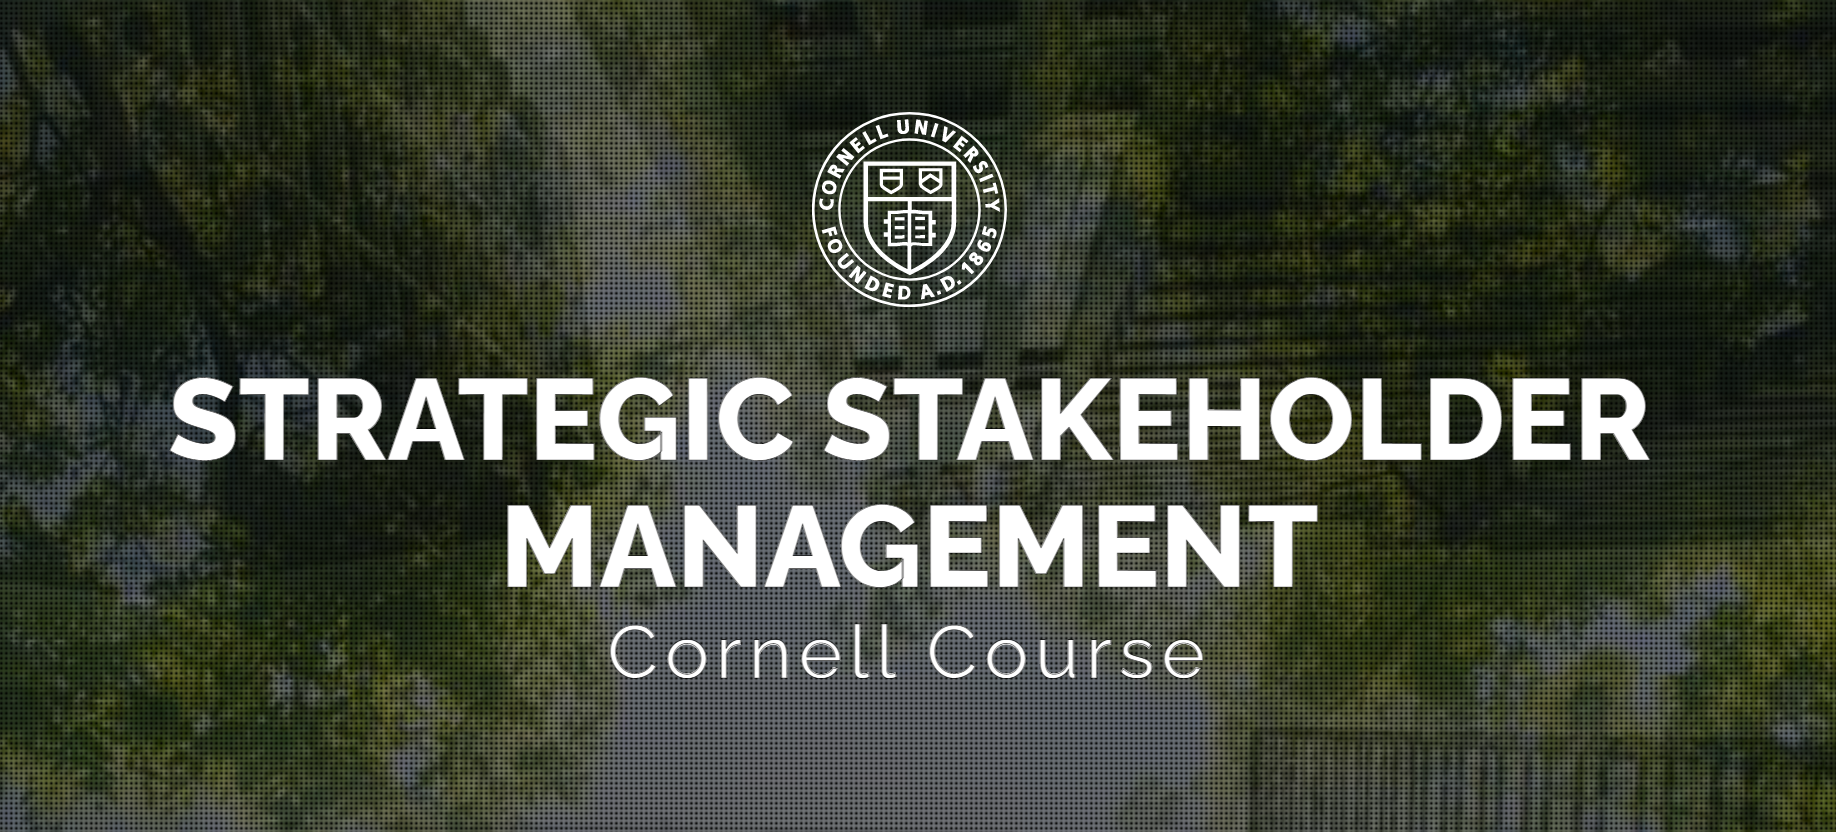 Strategic Stakeholder Management